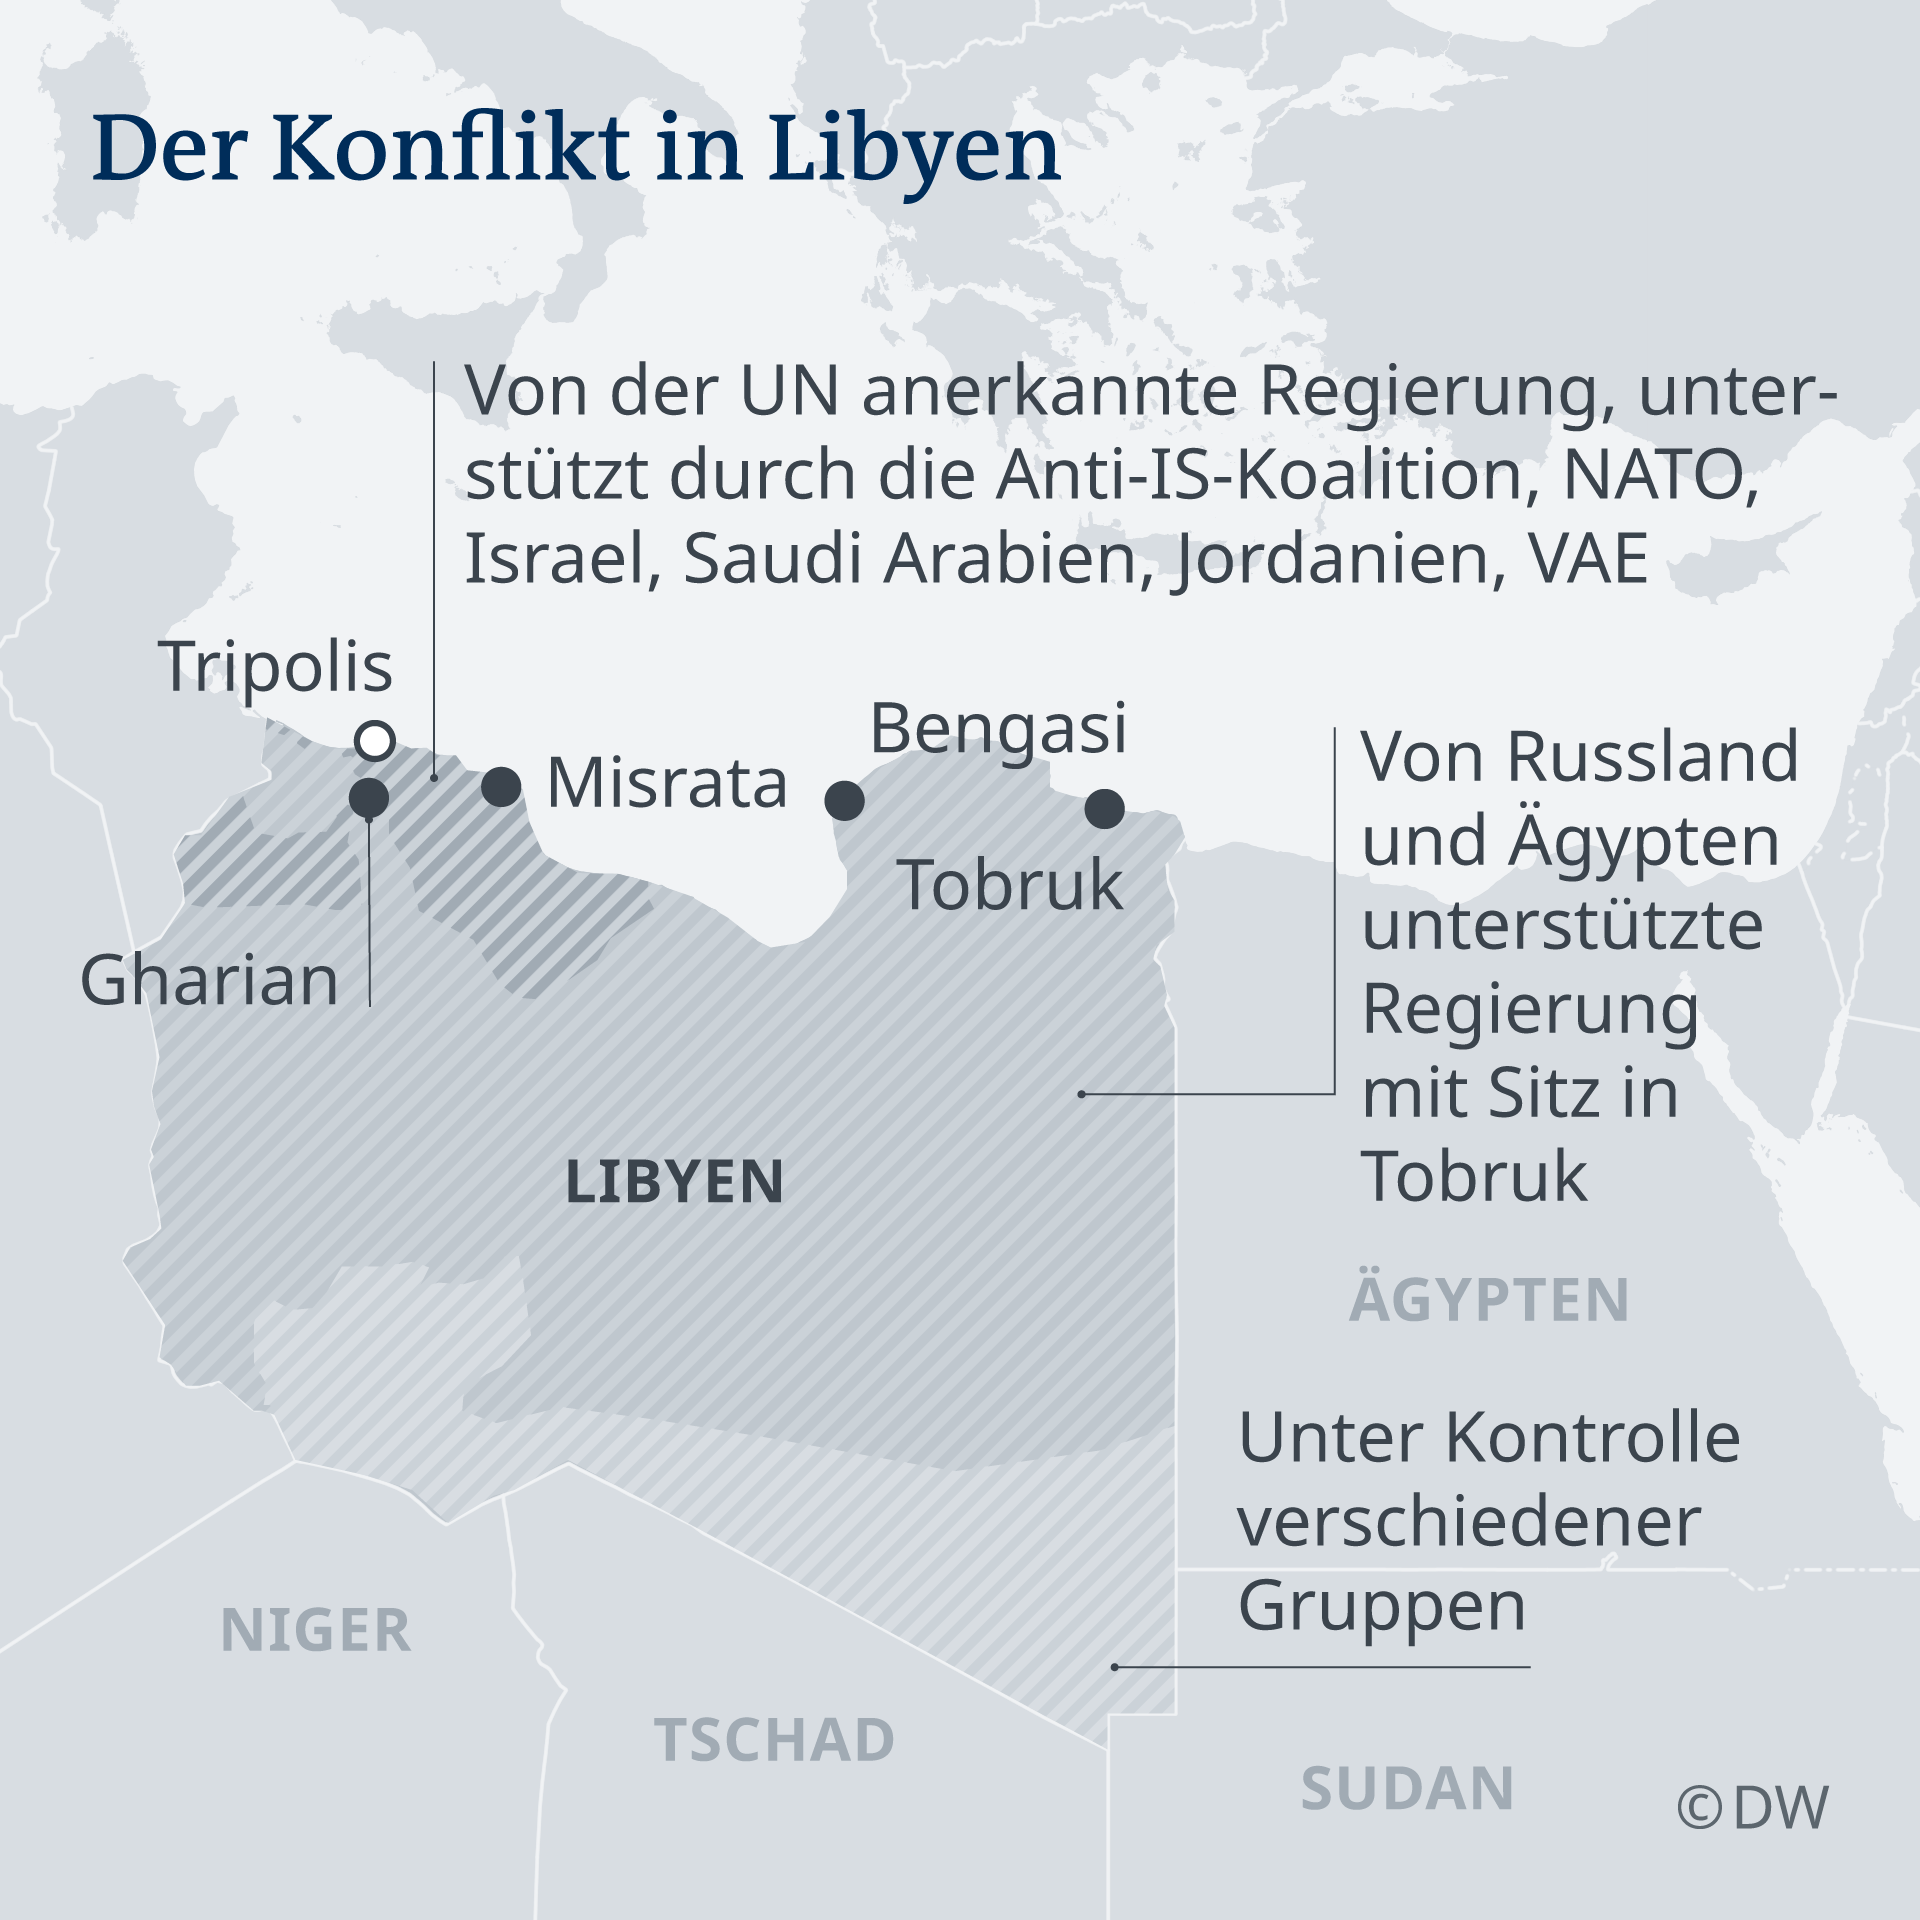 Politische Akteure und Allianzen im libyschen Bürgerkrieg; Quelle: DW